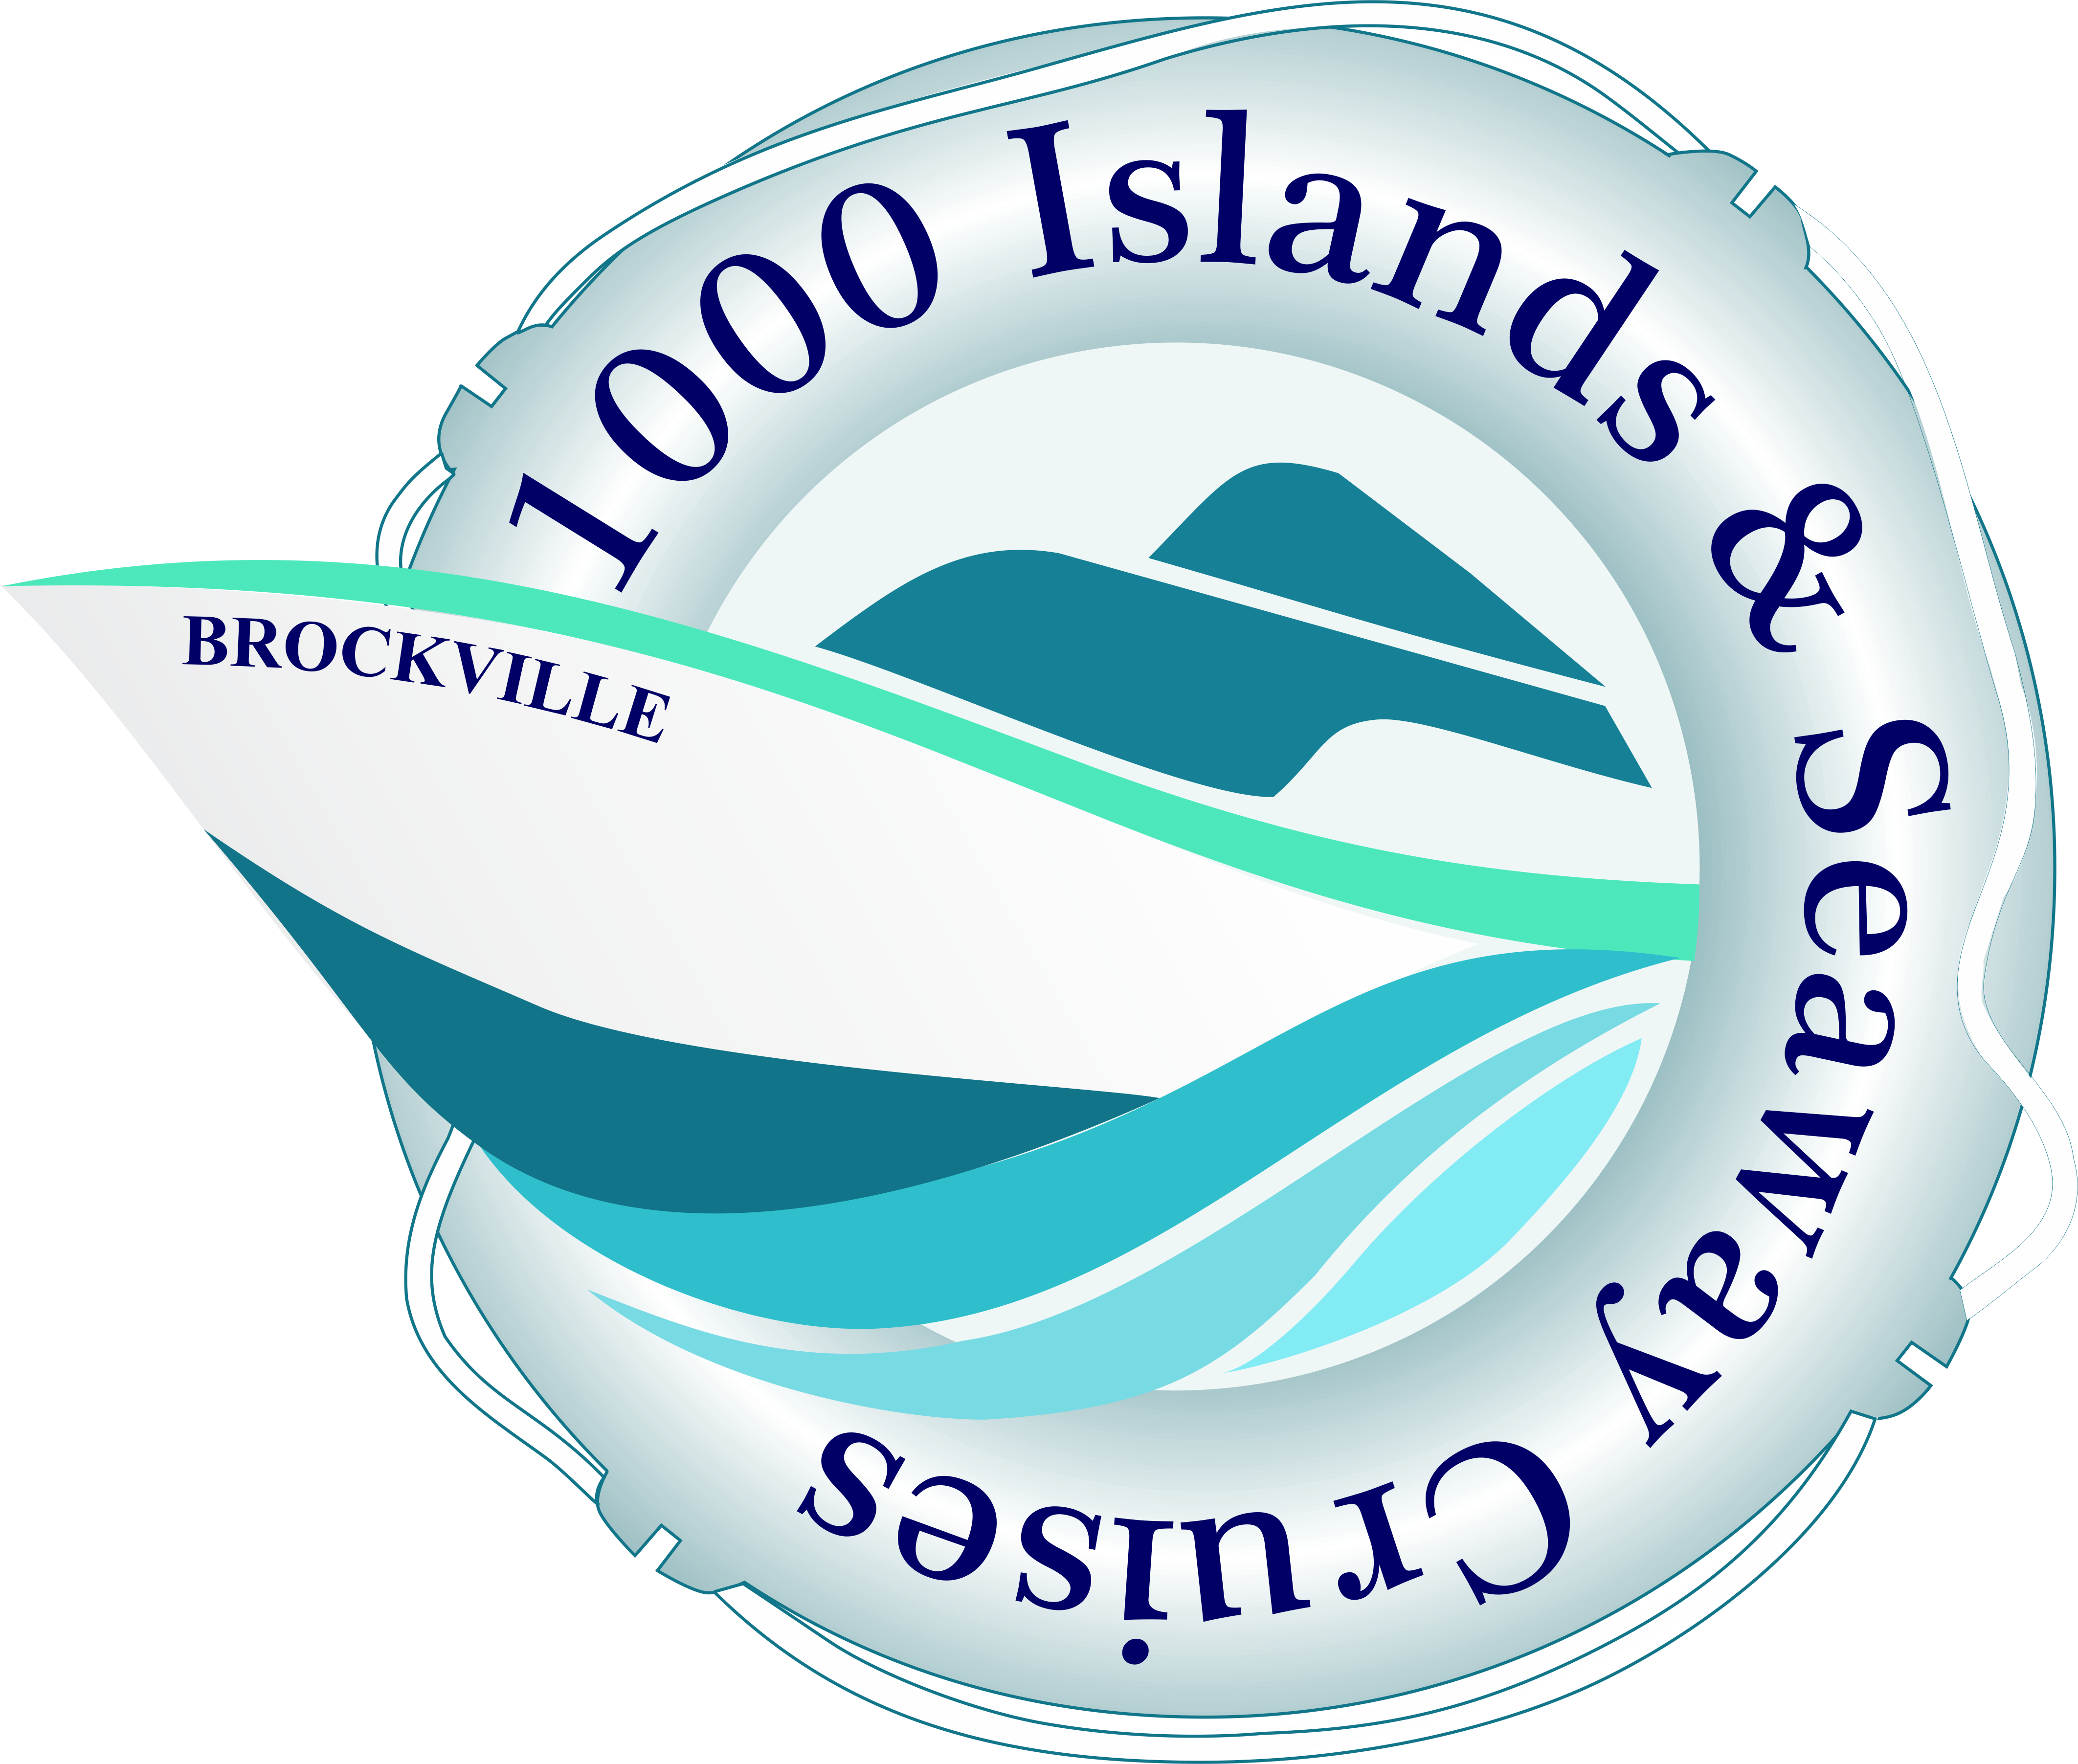 1000 island cruise brockville